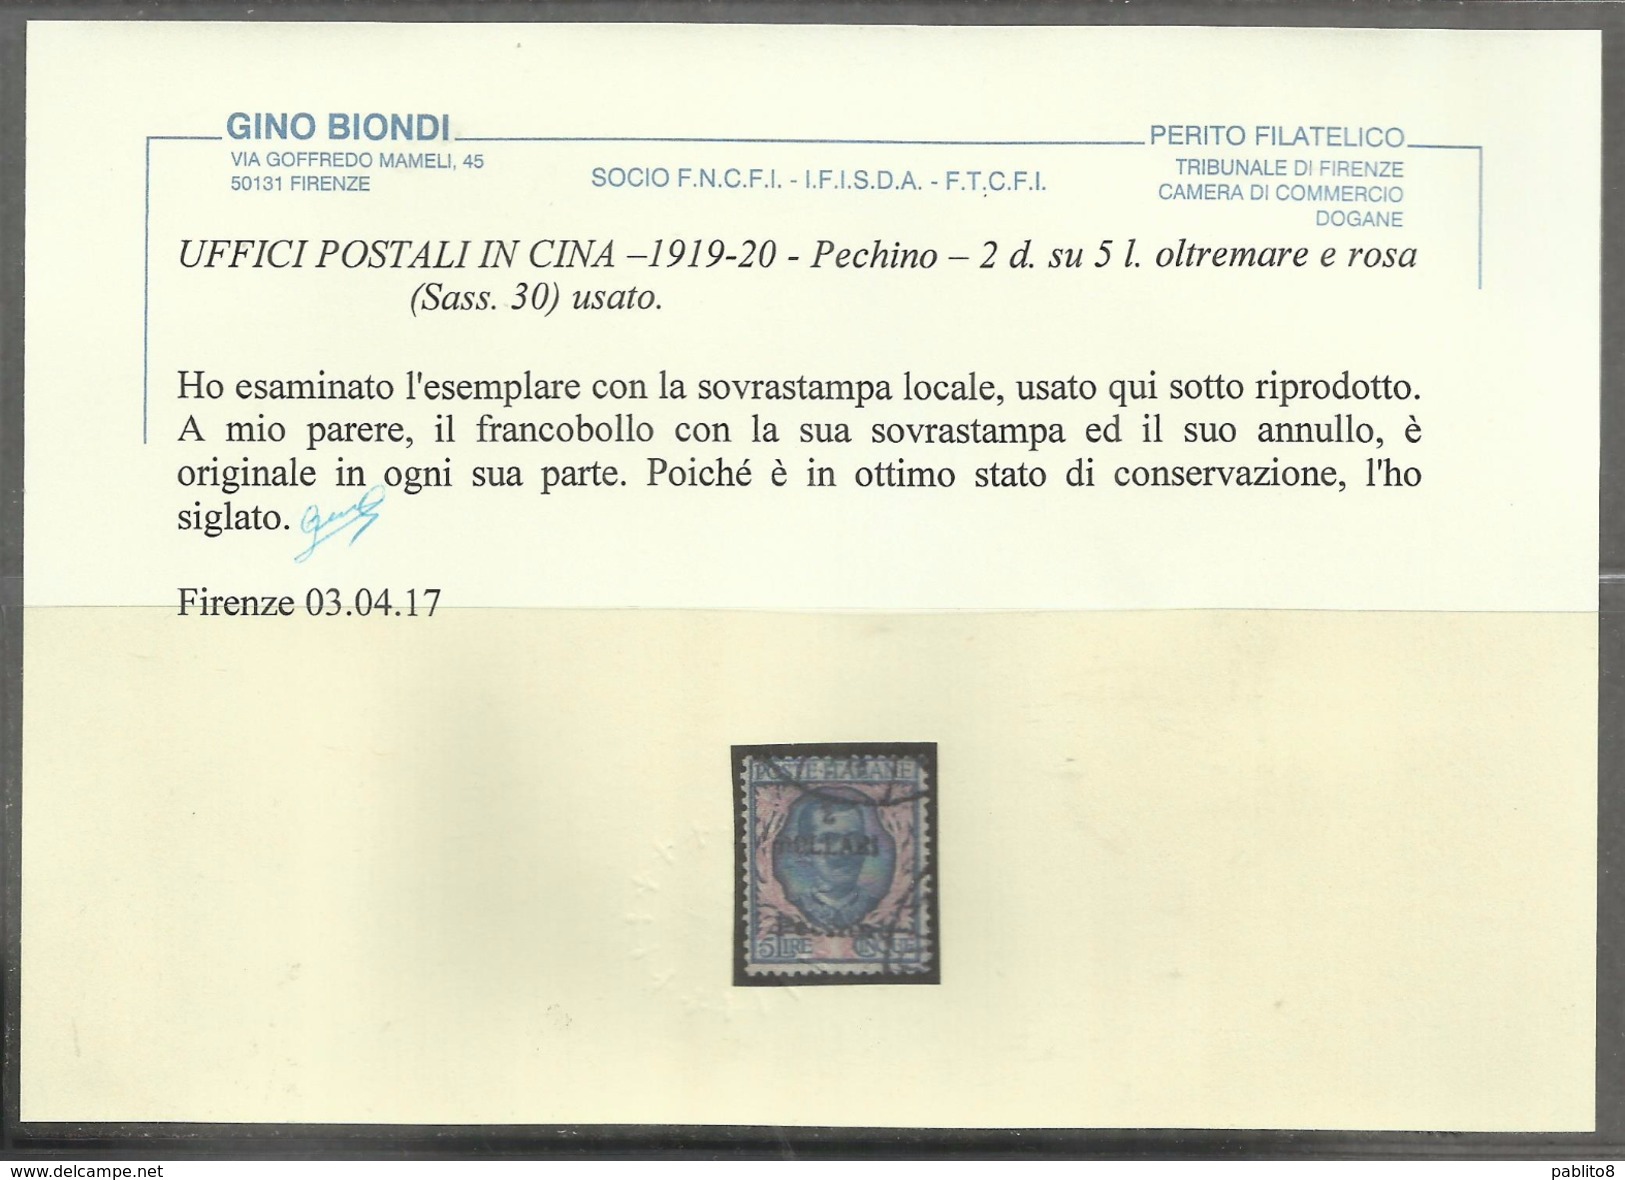 PECHINO BEIJING 1919 1920 SOPRASTAMPATO D'ITALIA ITALY OVERPRINTED 2 DOLLARI DOLLARS SU LIRE 5 USATO USED CERTIFICATO - Pechino